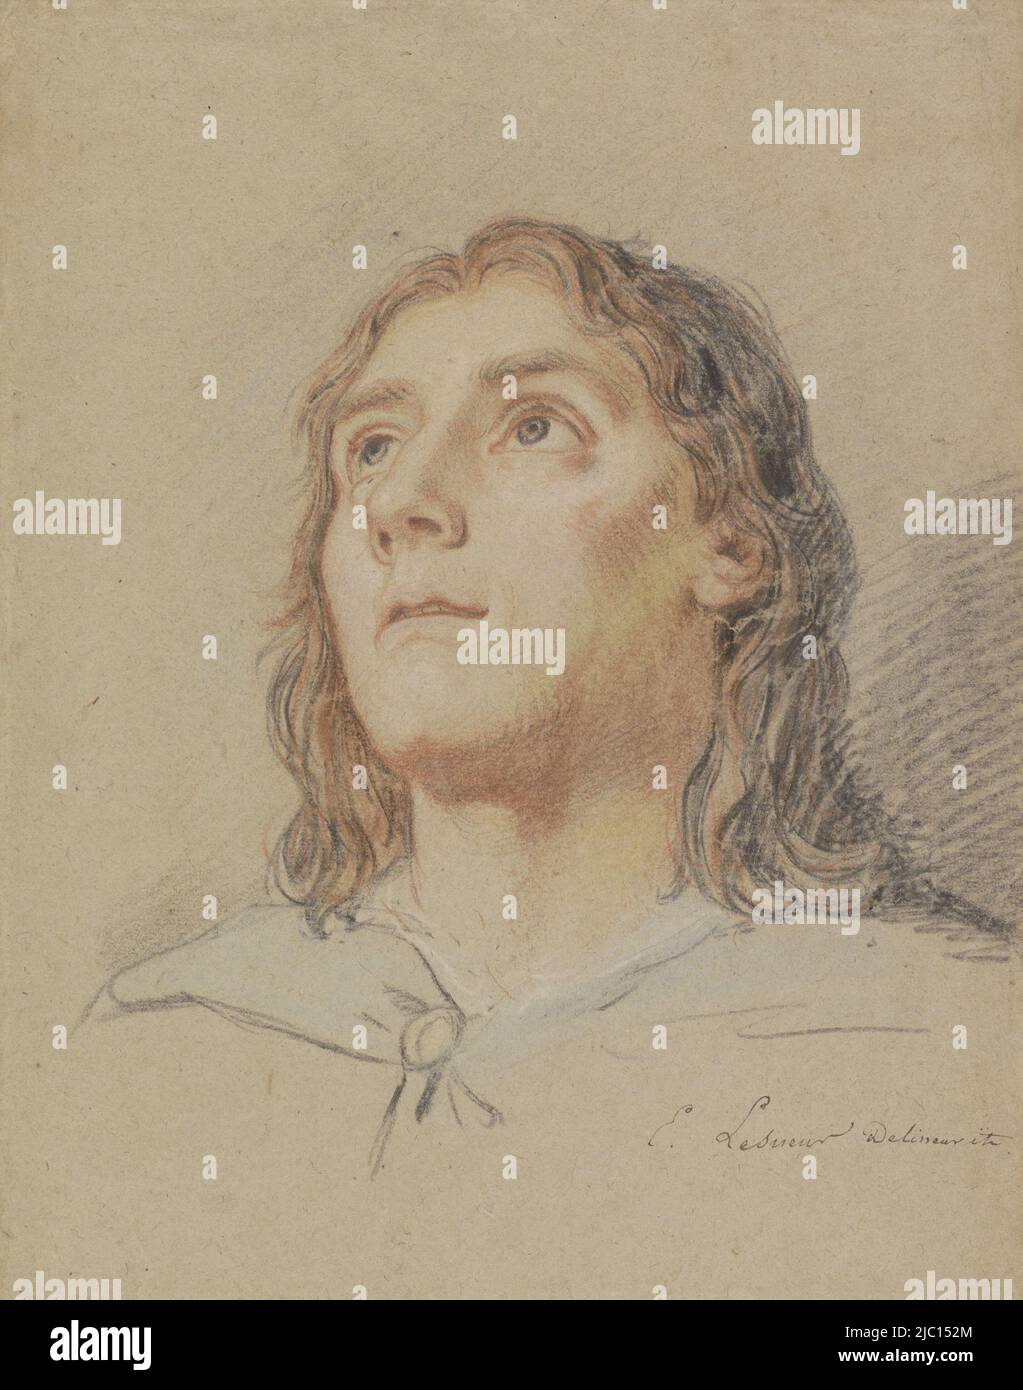 Testa di un giovane con capelli lunghi, disegnatore: Eustache Lesueur, (menzionato sull'oggetto), Francia, 1626 - 1655, carta, h 291 mm x l 228 mm Foto Stock